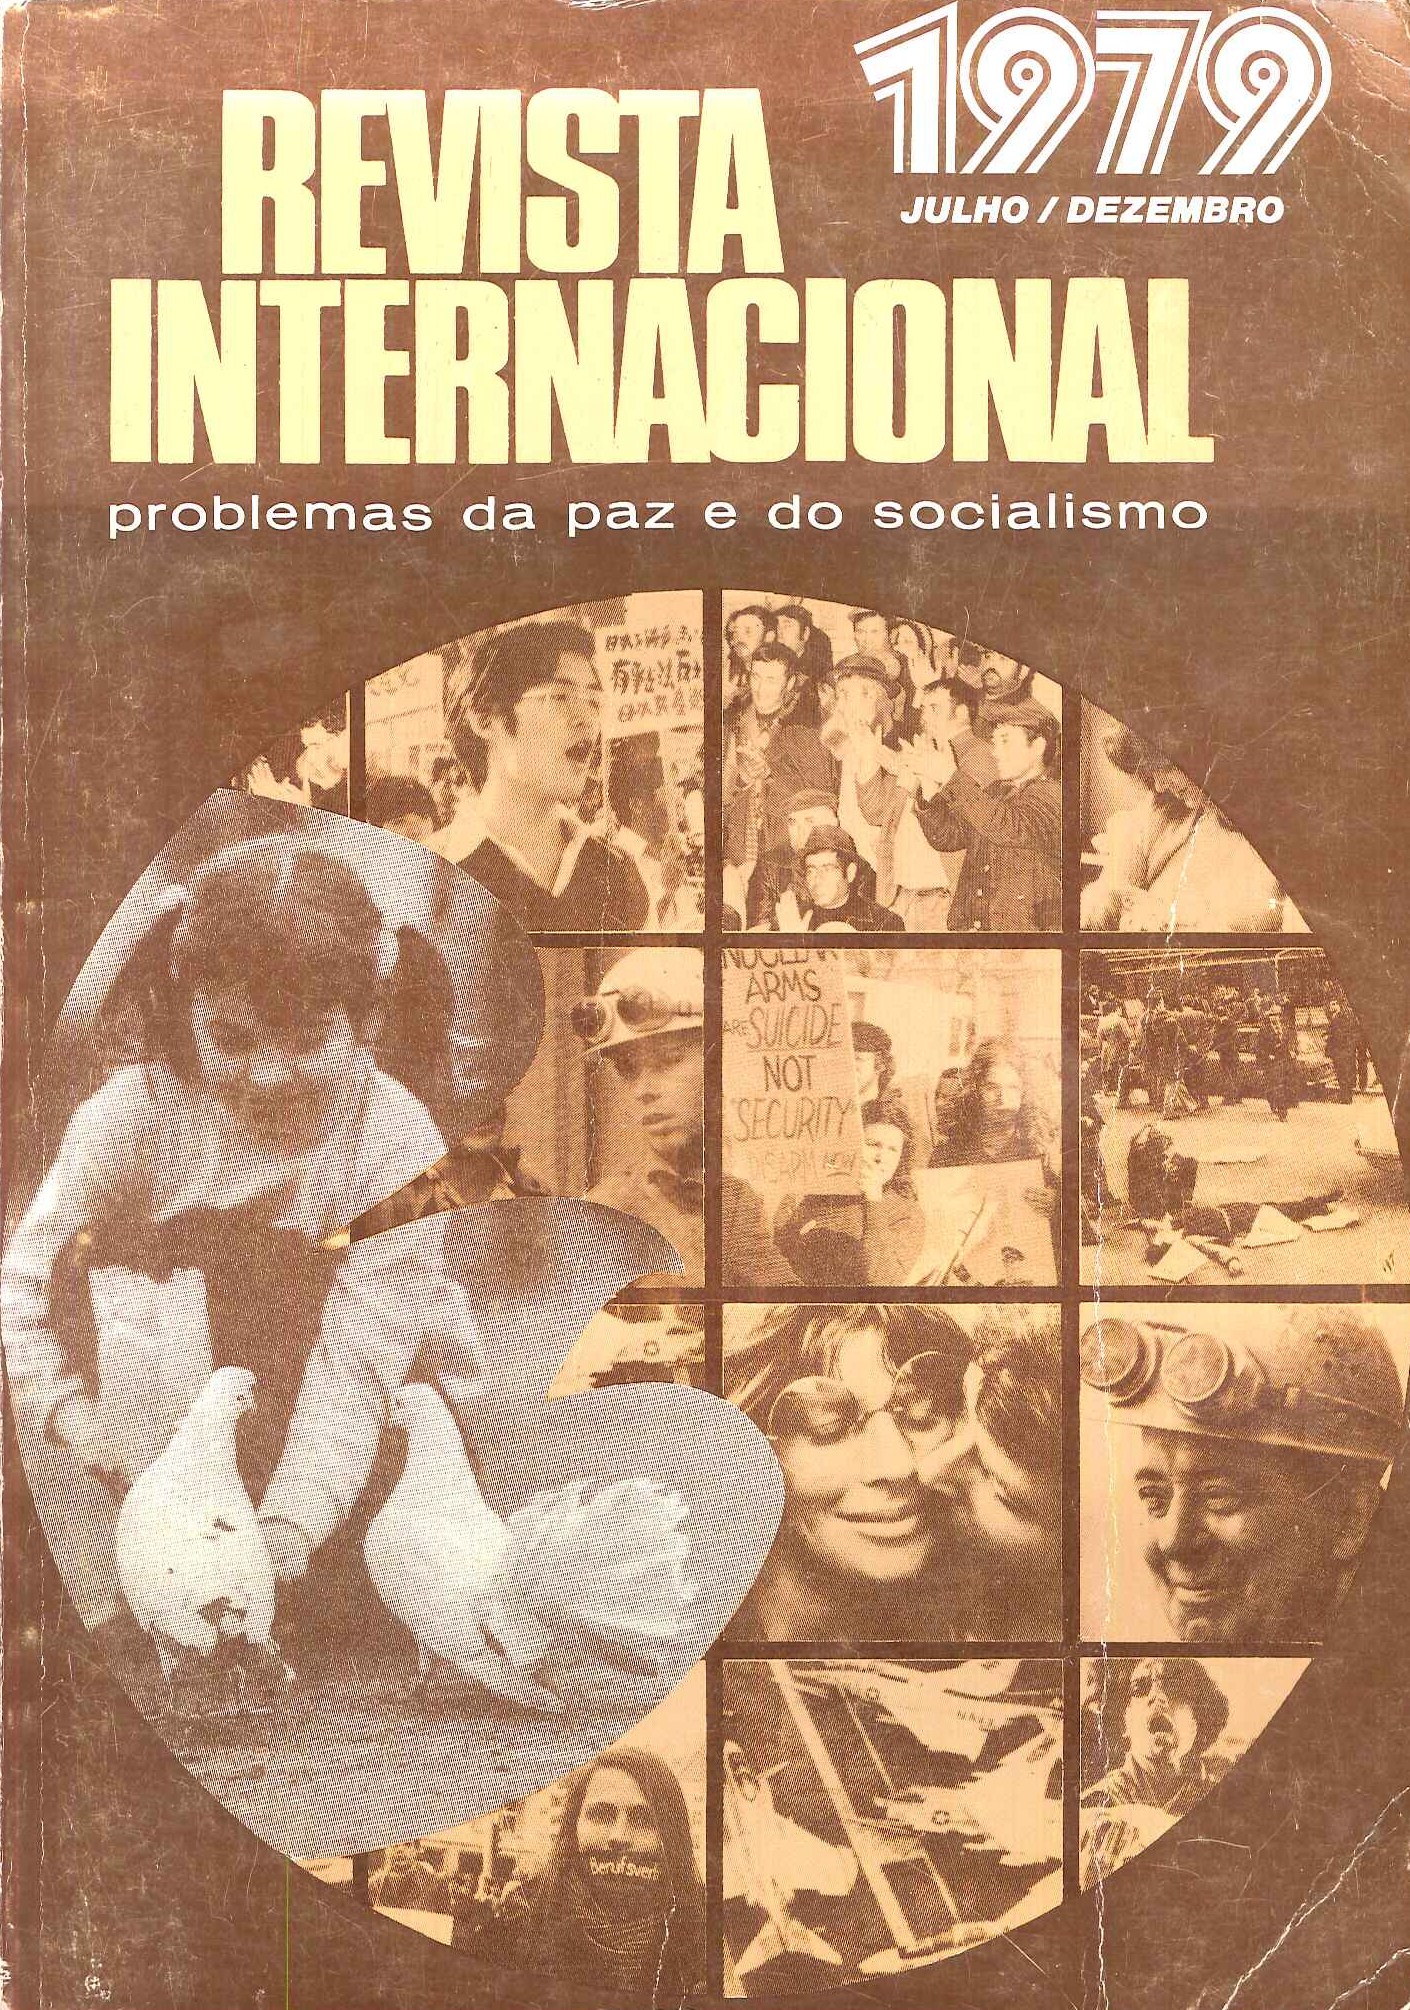 Revista_Internacional_PCP_1979